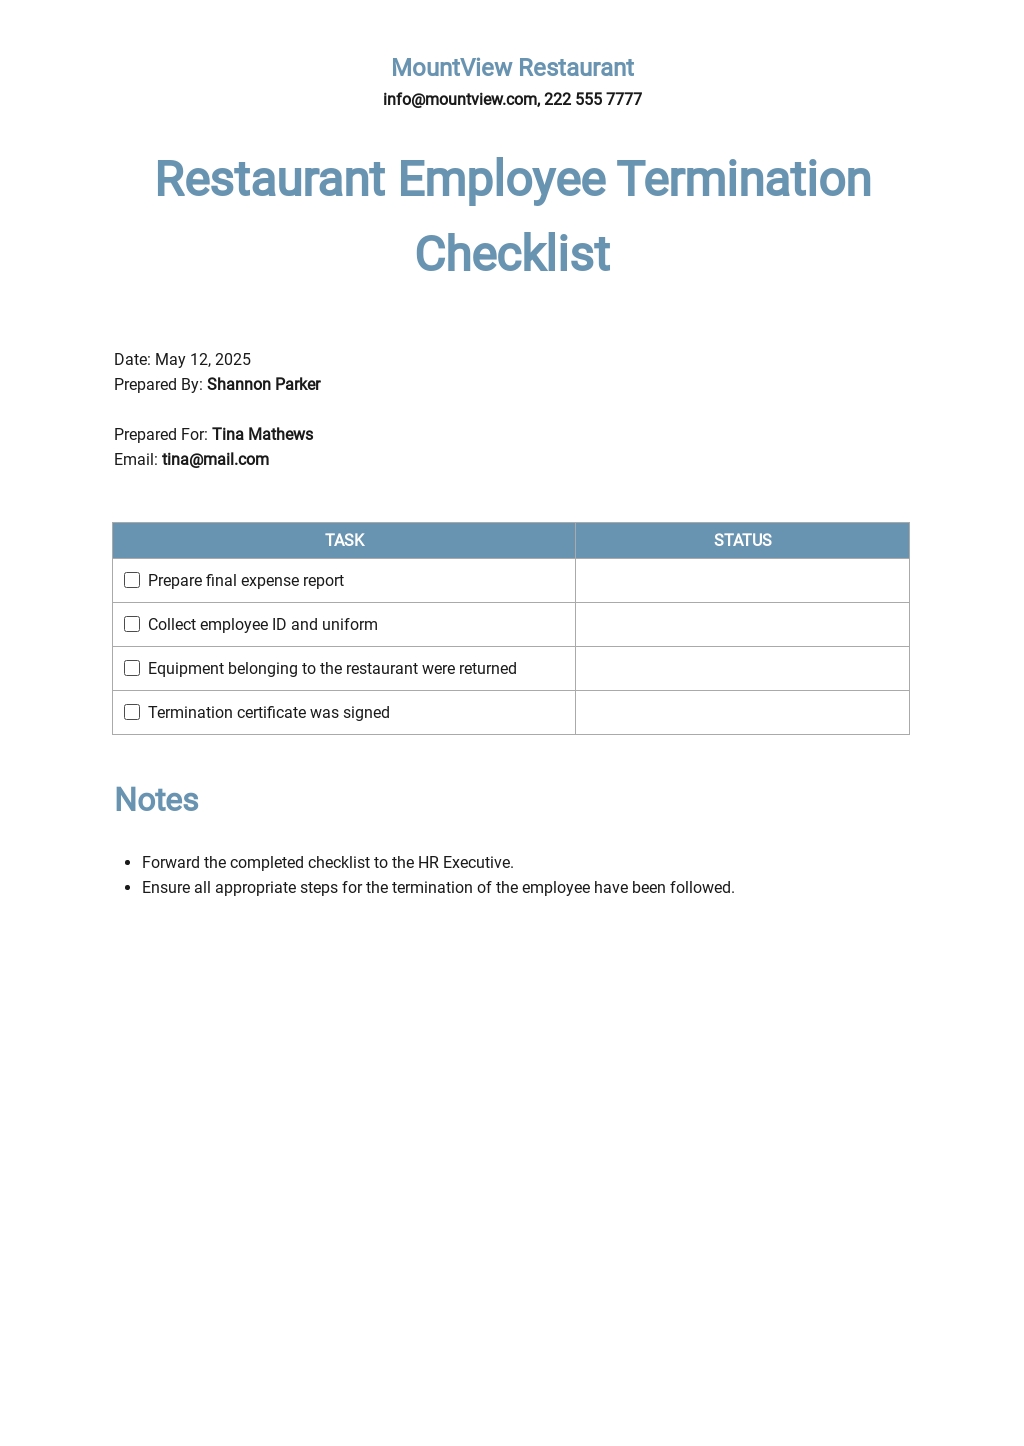 Restaurant Employee Termination Checklist Template.jpe